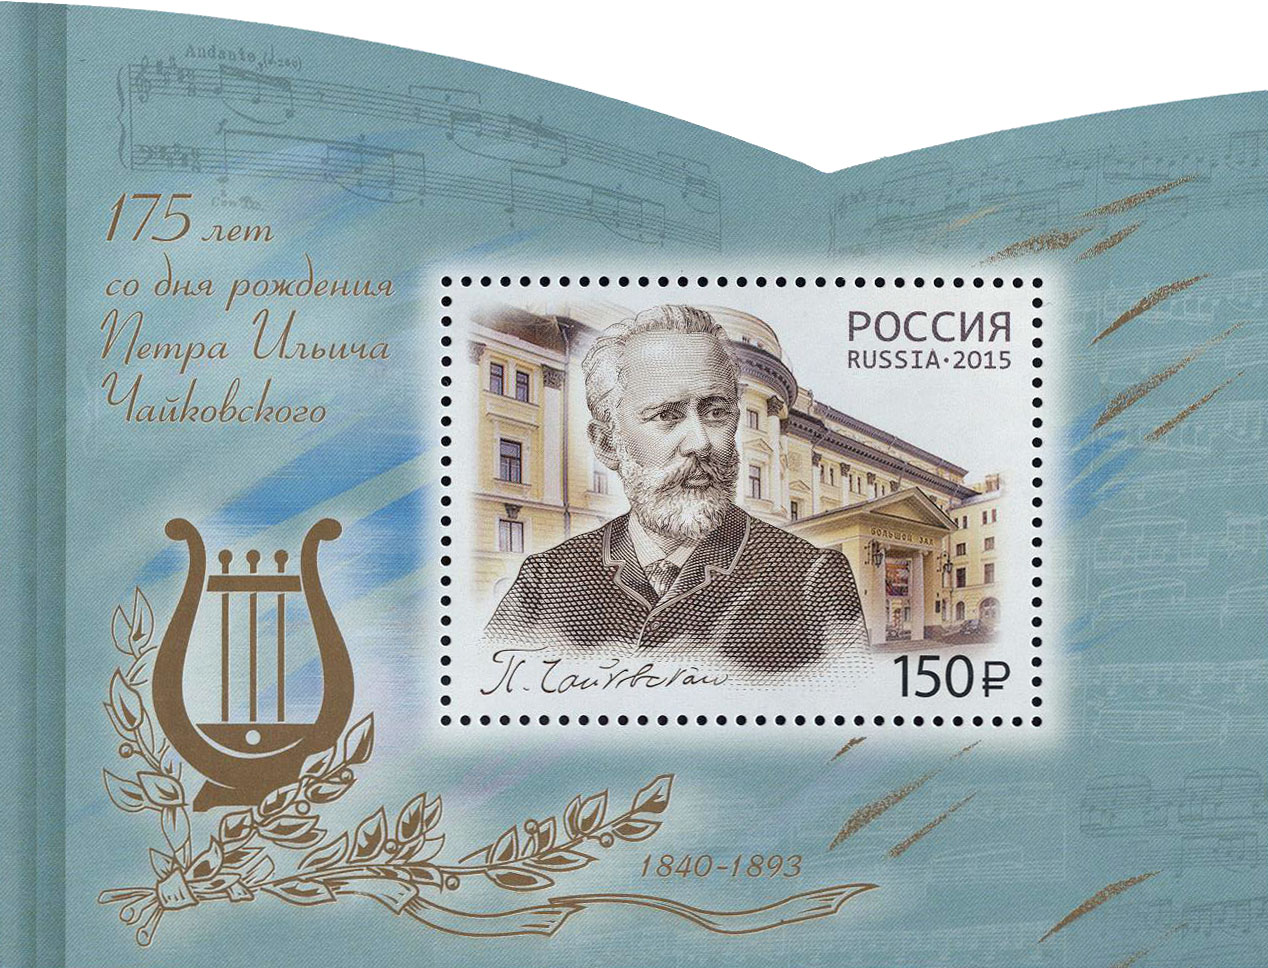 175 лет со дня рождения П.И. Чайковского (1840-1893), композитора